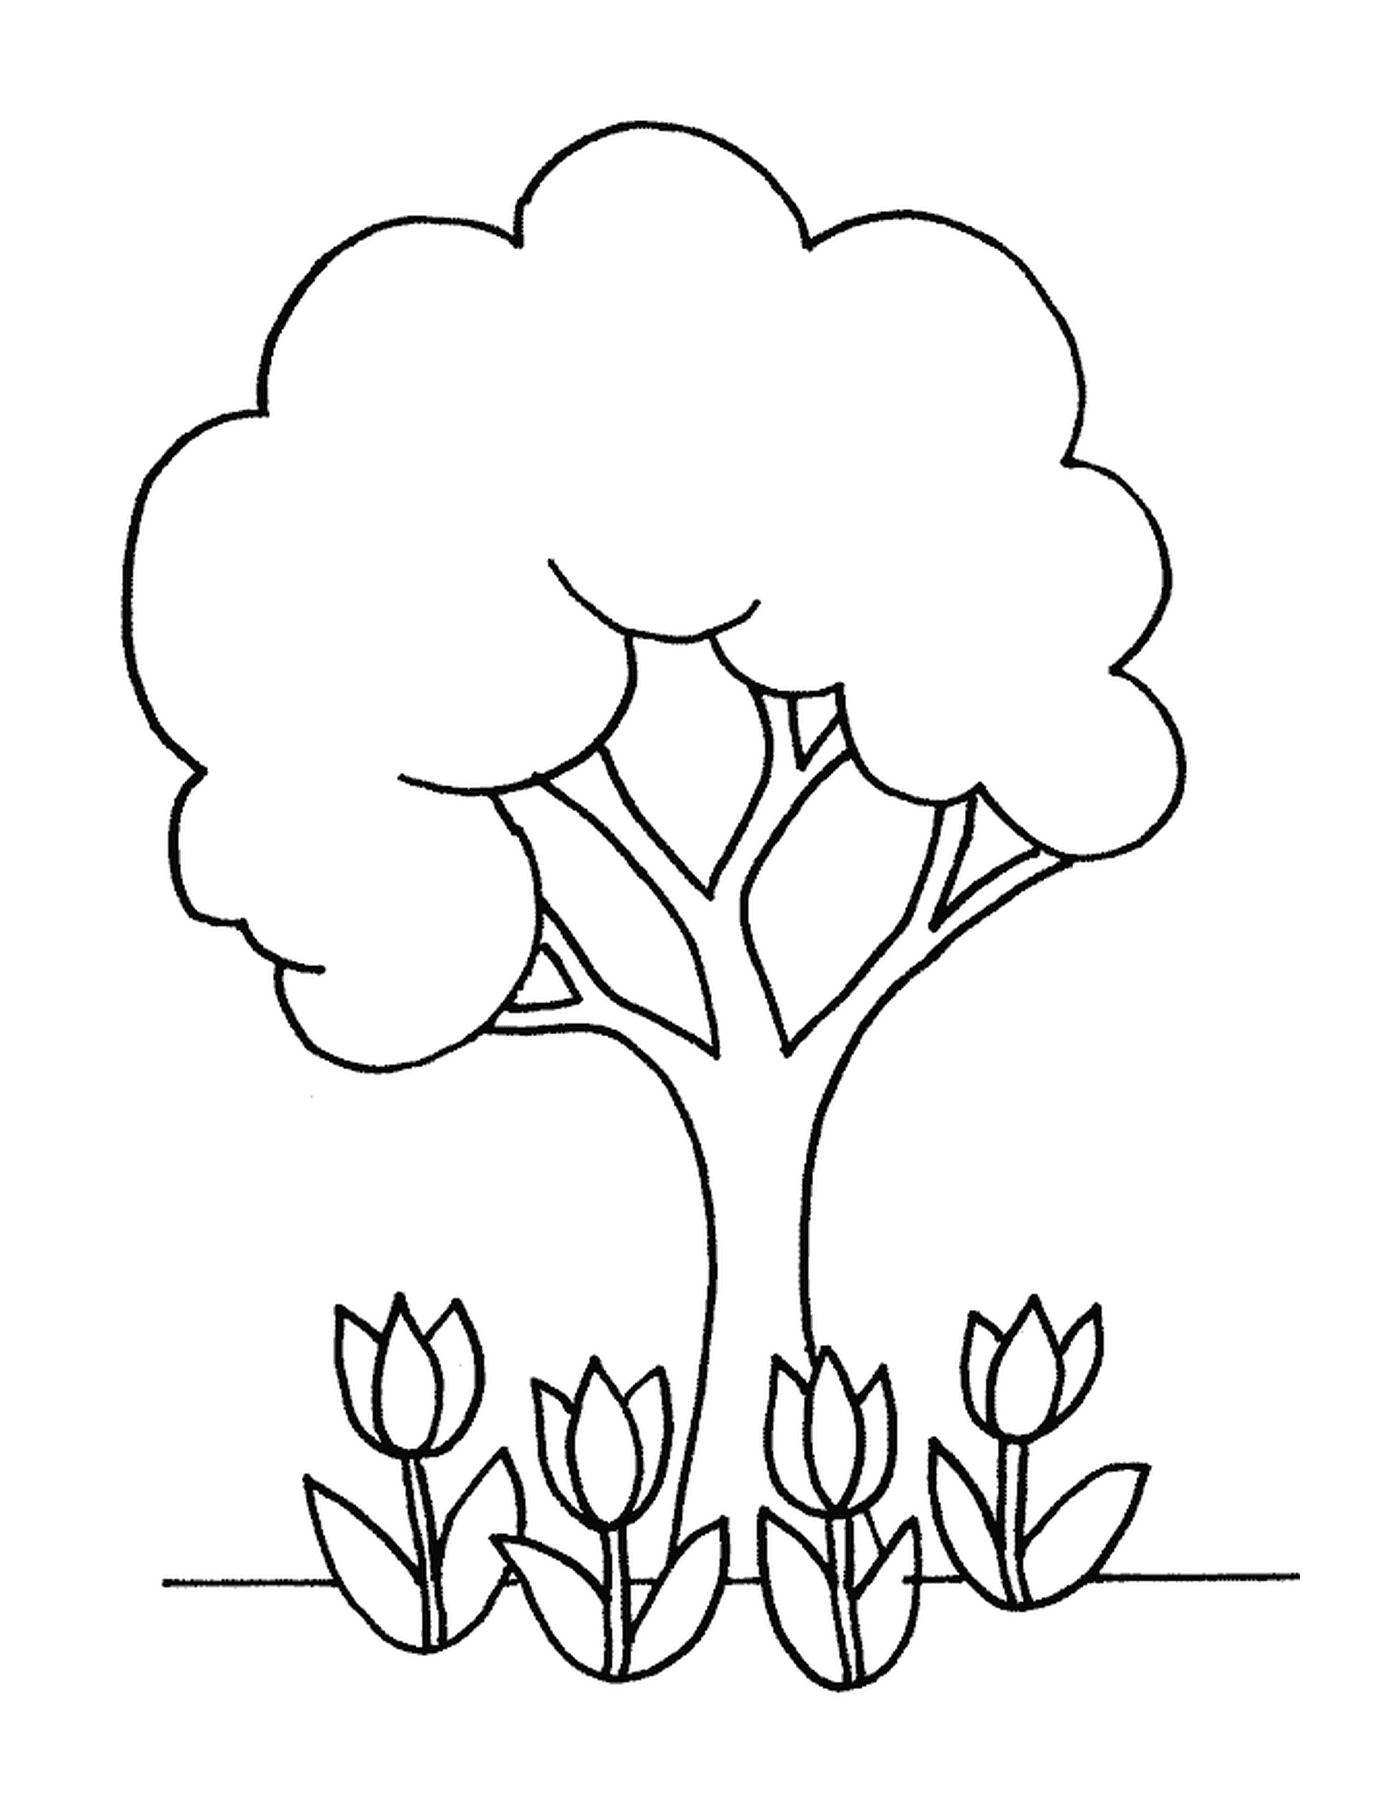   Un arbre et des tulipes 